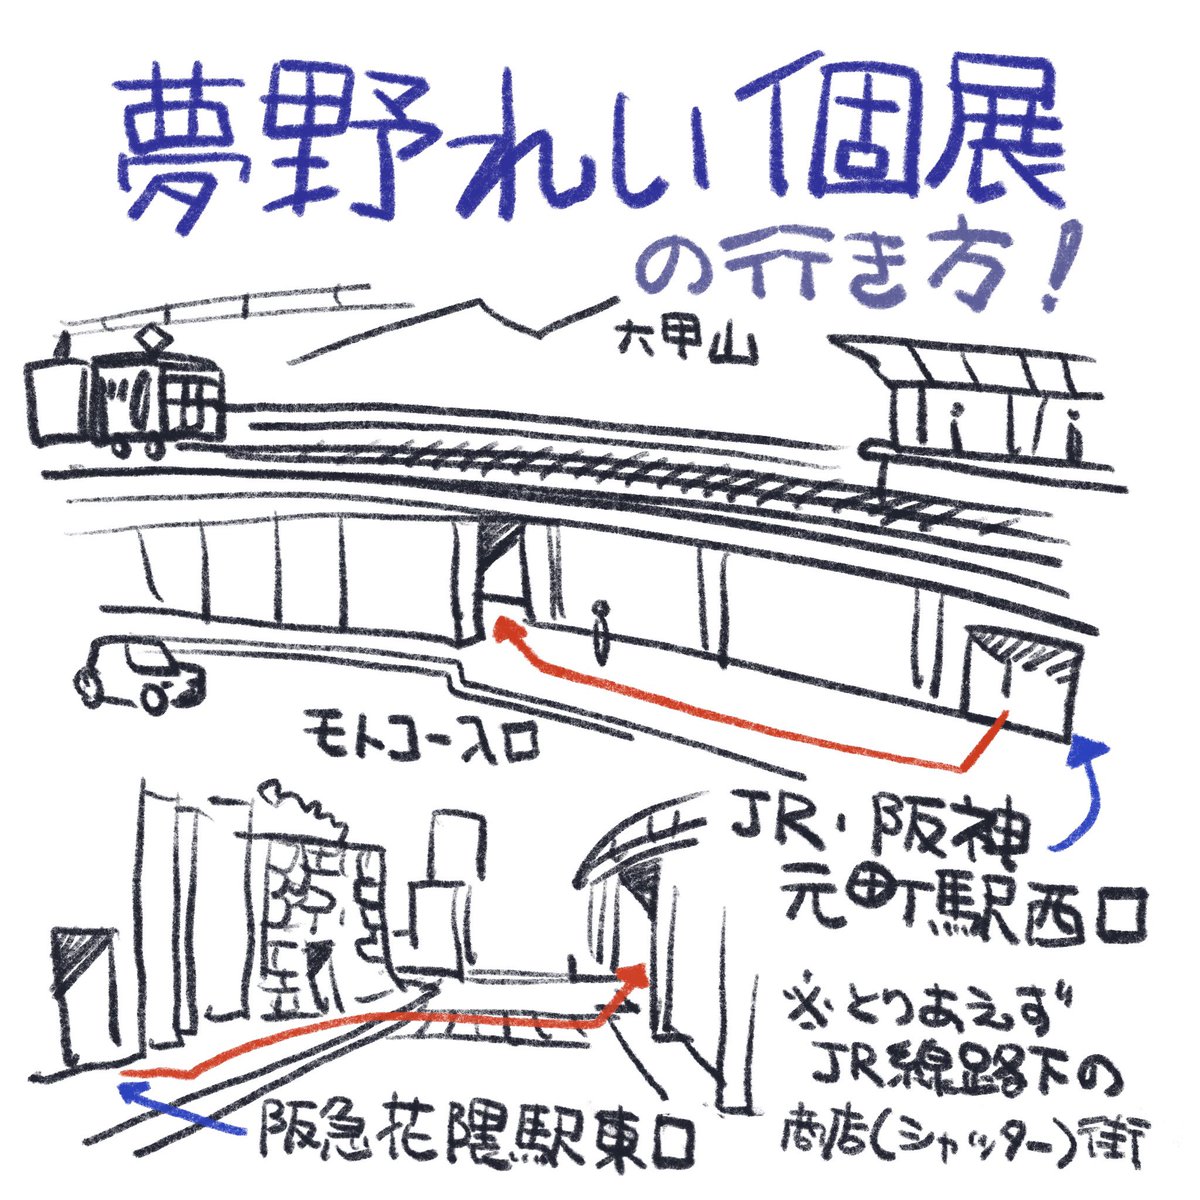 電車での行き方です。
JR:元町駅(新快速は停まりません)
阪神:元町駅(全部停まります)
阪急:花隈駅(全部停まります)
徒歩5分ほどです。
オレンジの壁が目印です。 